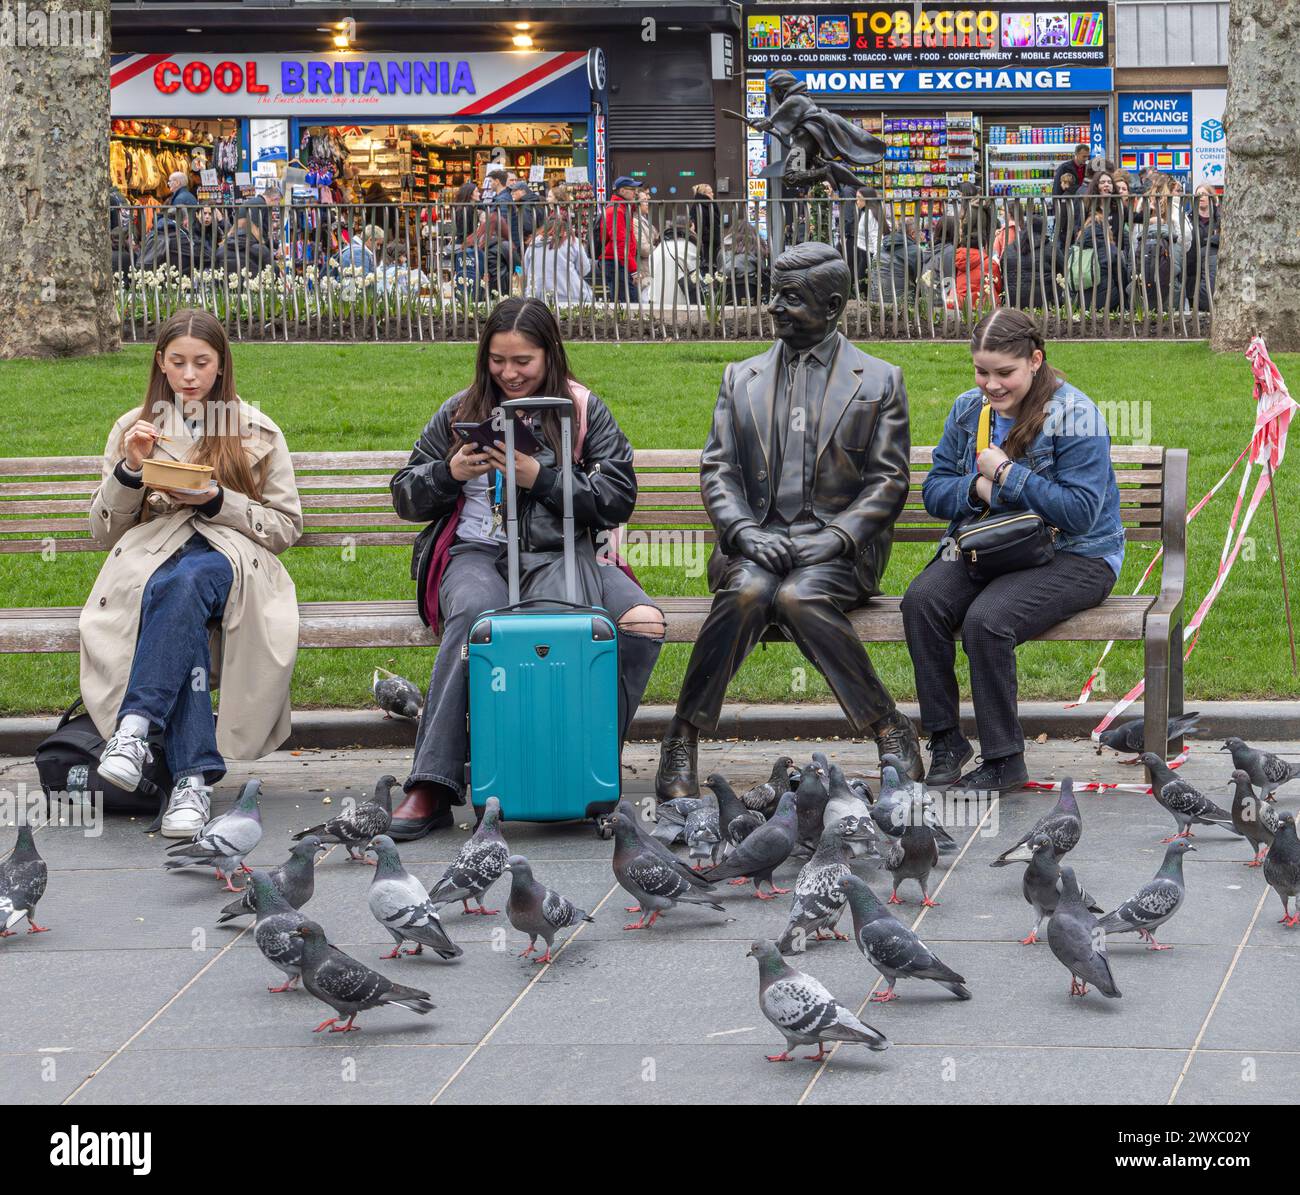 Donne sedute su una panchina accanto a una statua di bronzo del signor Bean, a Leicester Square, Londra. I piccioni si riuniscono davanti a loro in cerca di cibo. Foto Stock